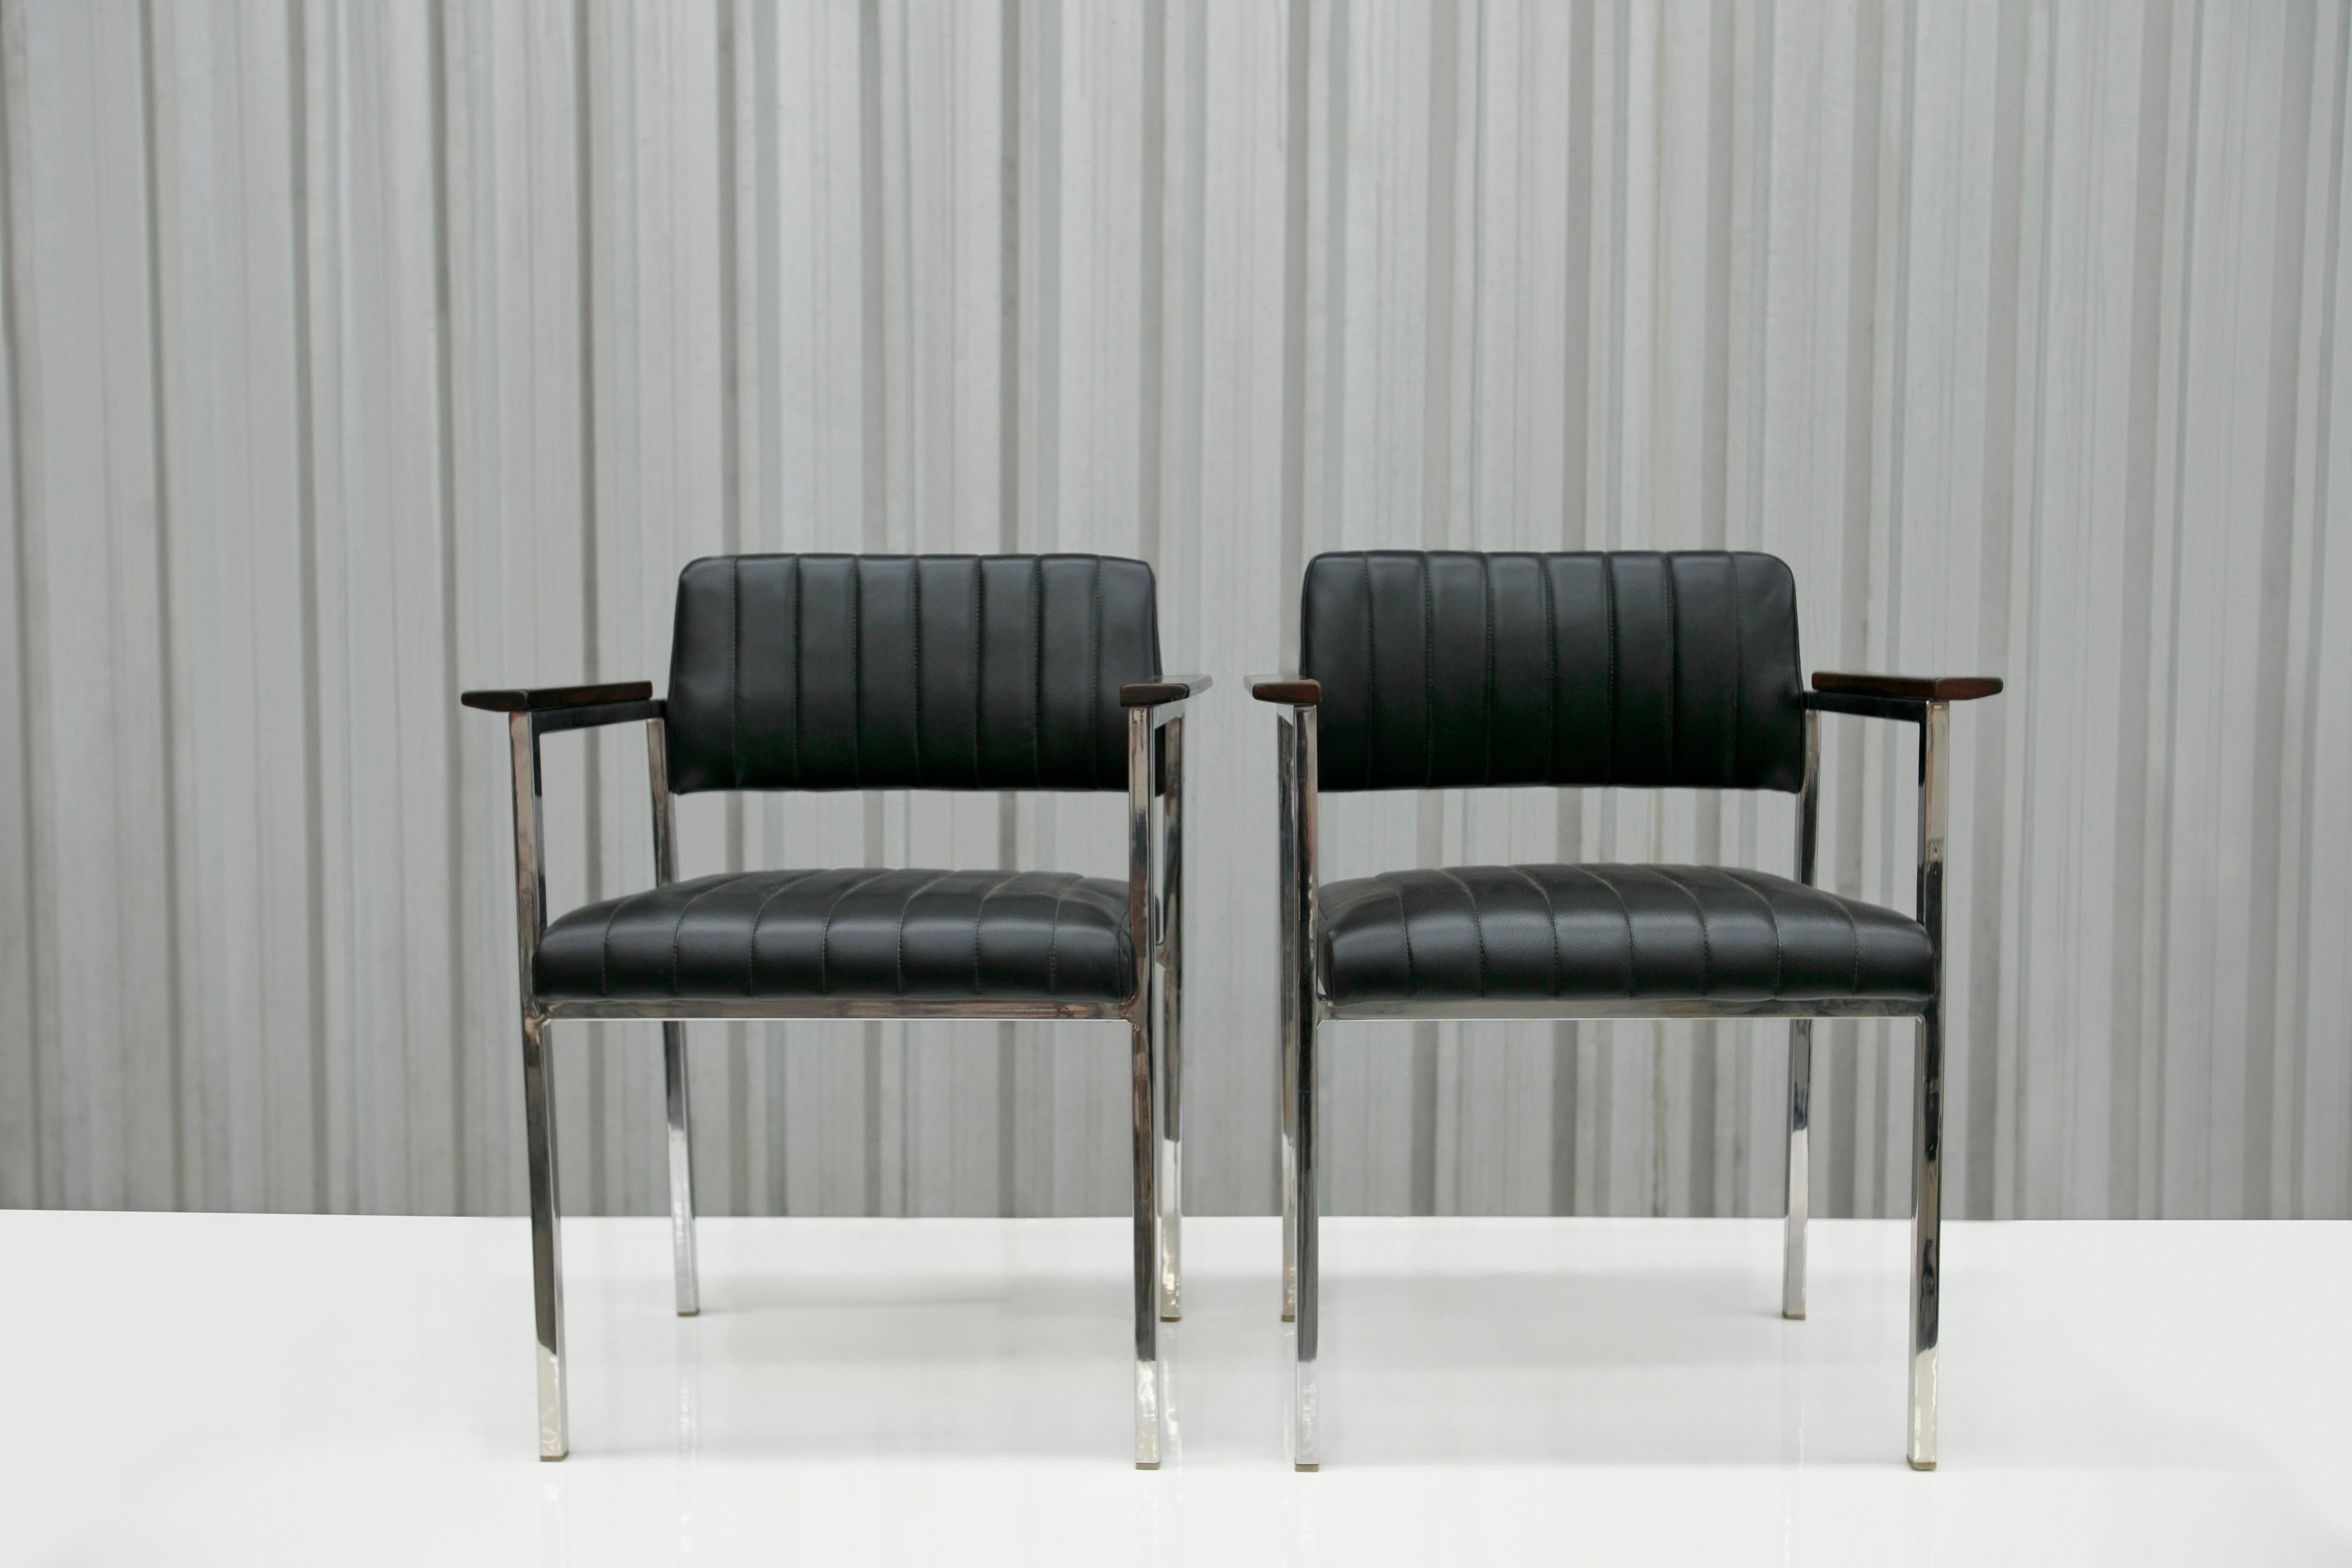 Diese heute erhältlichen modernen brasilianischen Sessel aus Stahl, Leder und Holz Unbekannt, 1960er Jahre, Brasilien sind wunderschön. 

Das Gestell dieser Stühle ist aus Stahl und die Sitzfläche und Rückenlehne sind mit schwarzem Leder bezogen.